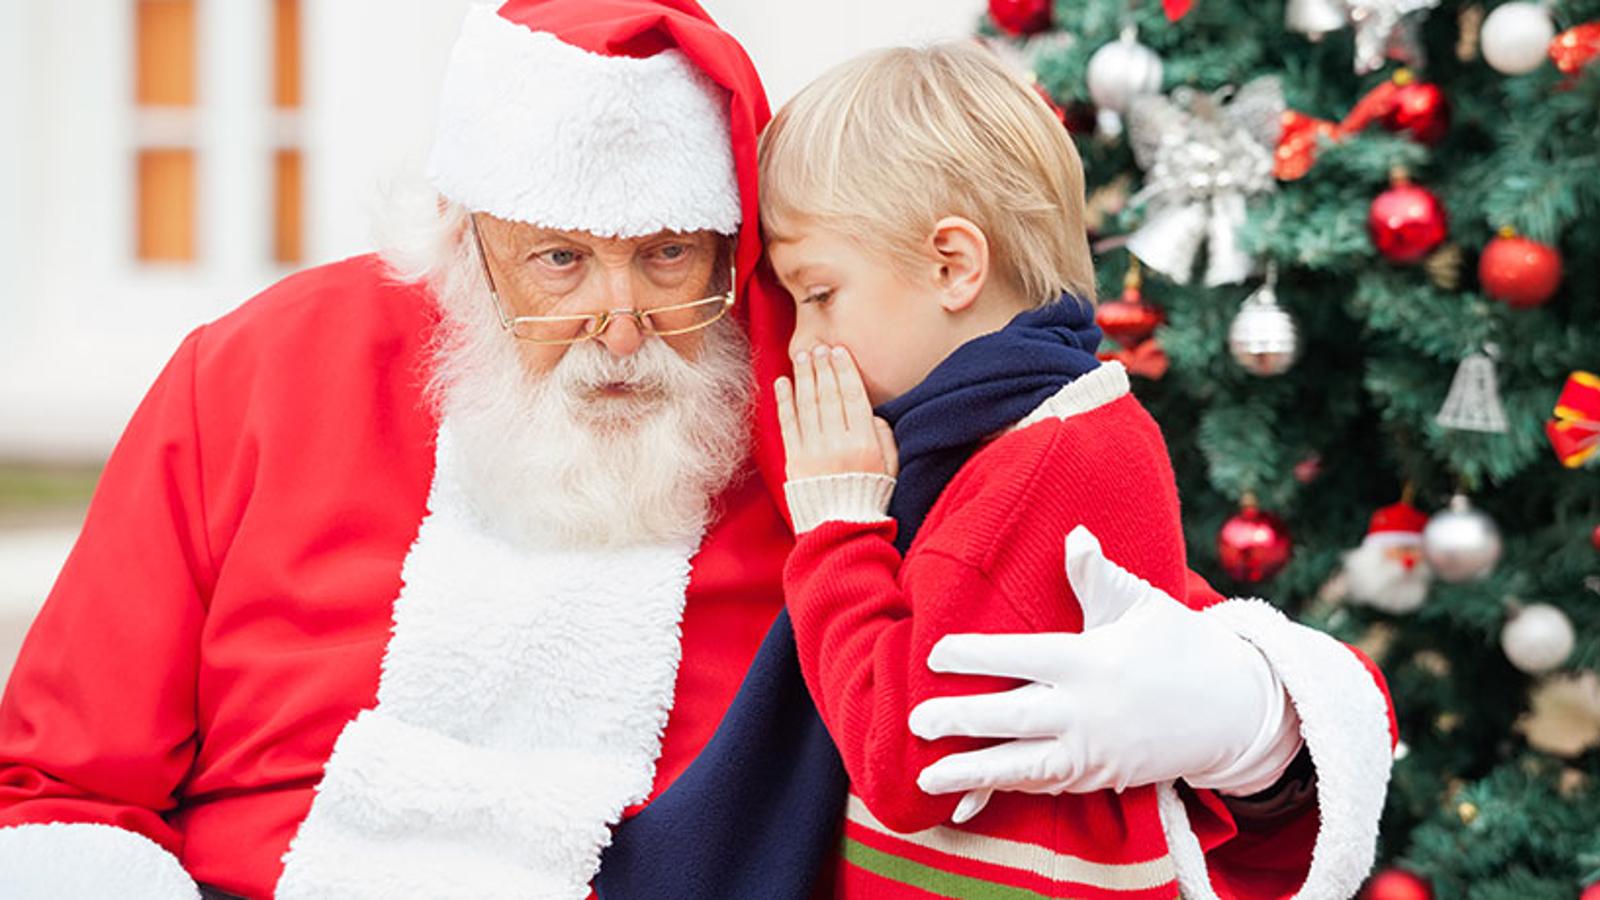 Tomten som håller om en pojke som viskar något i hans öra. Bakom dem står en klädd julgran.